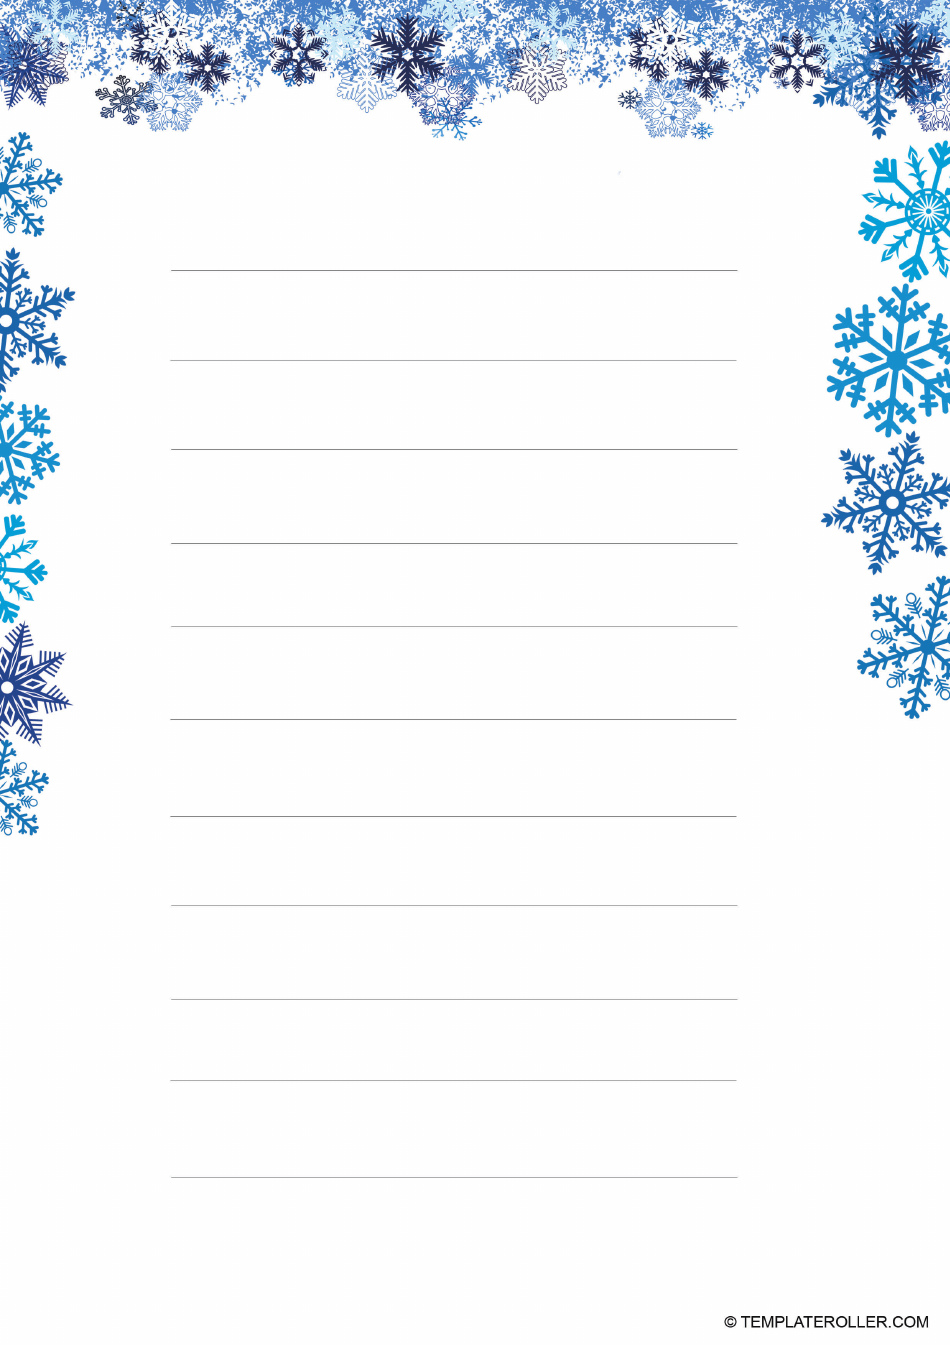 Christmas Border Template - Snow Frame Download Printable PDF ...